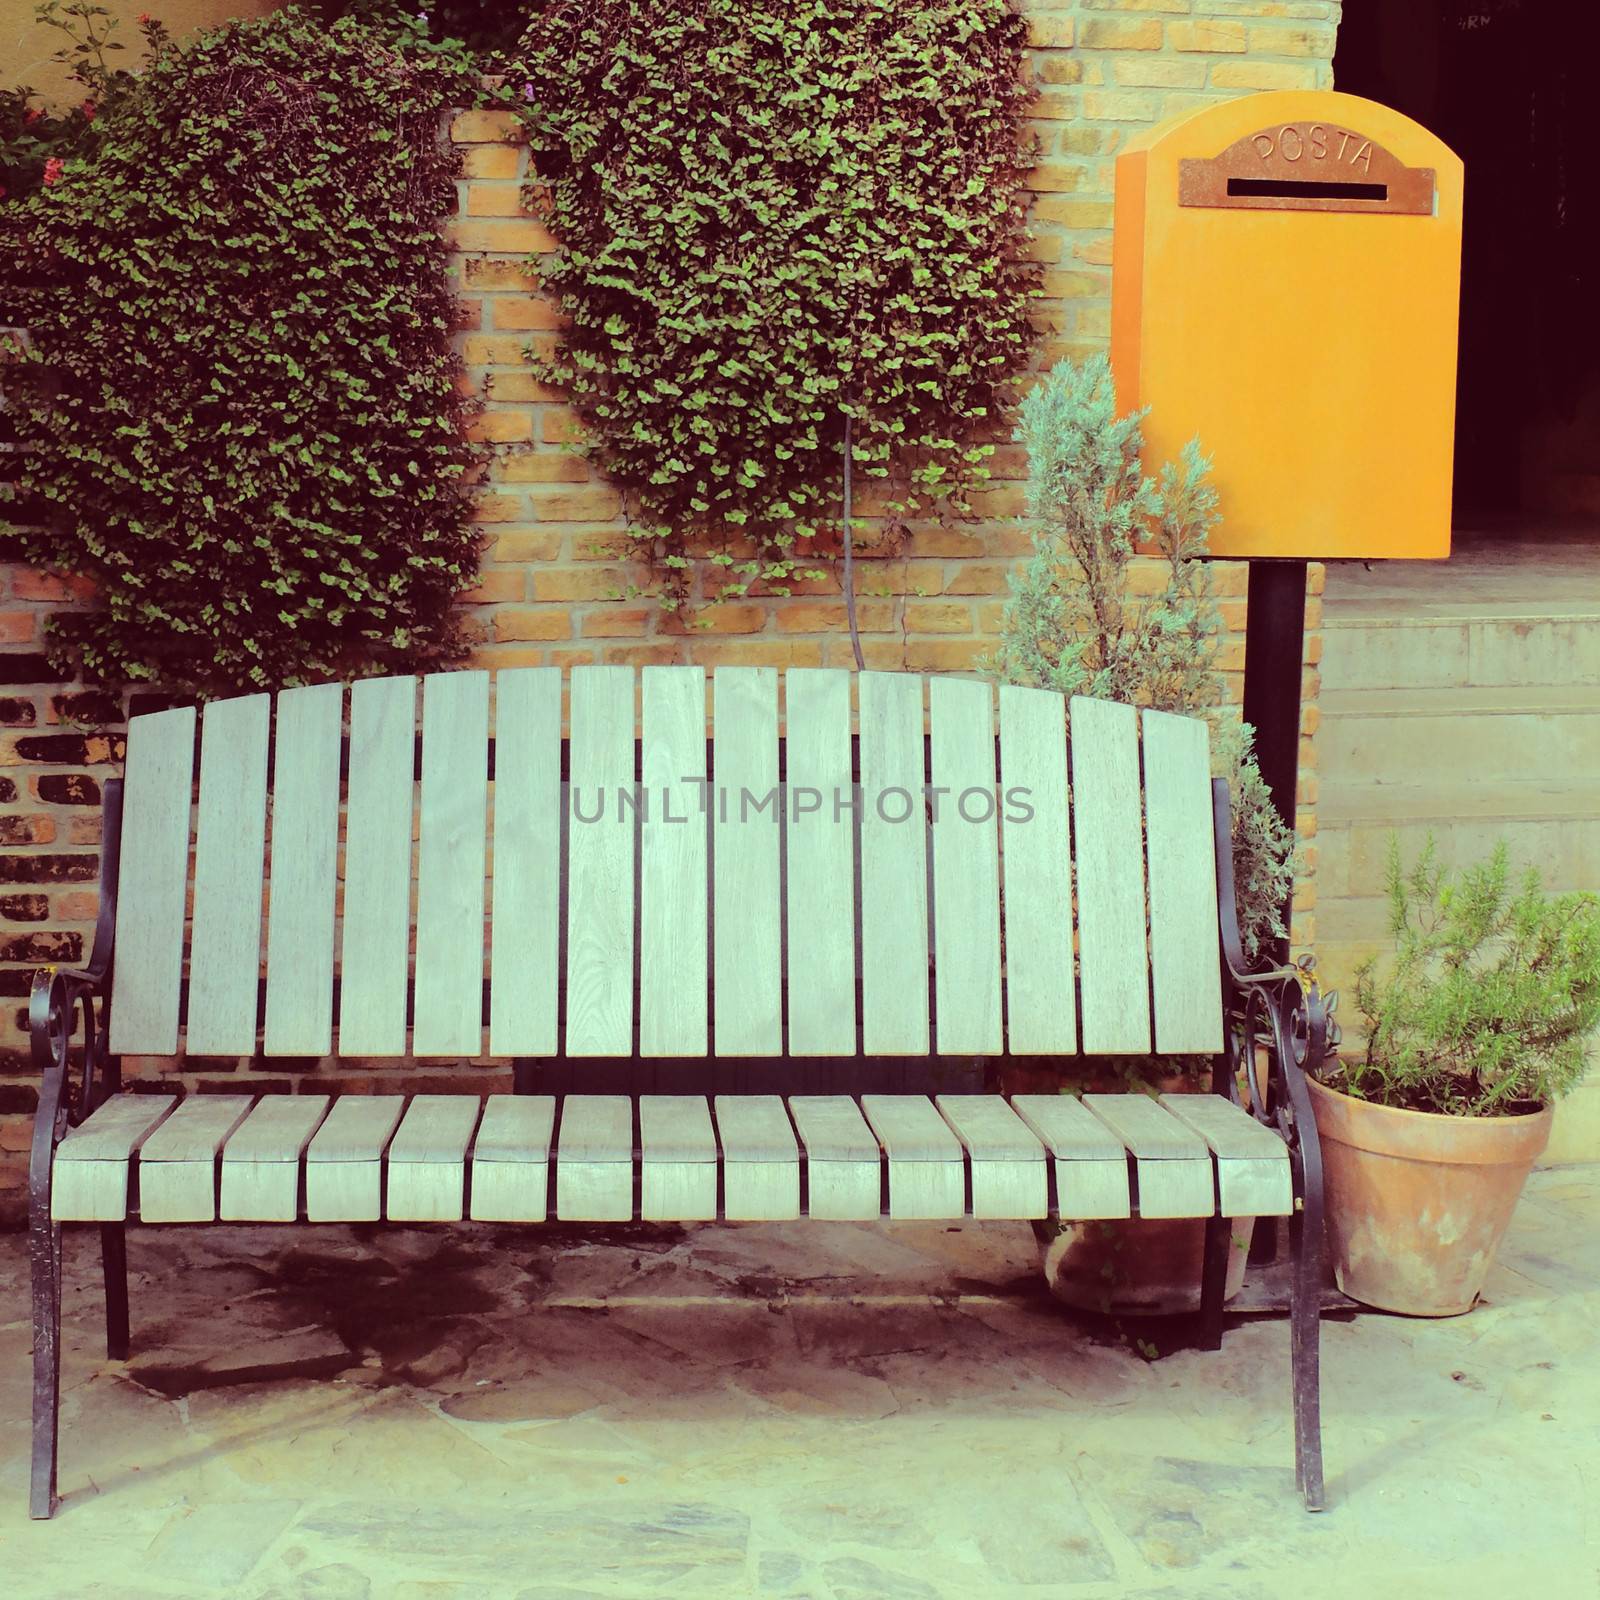 Wooden chair with vintage mailbox in garden, retro filter effect by nuchylee